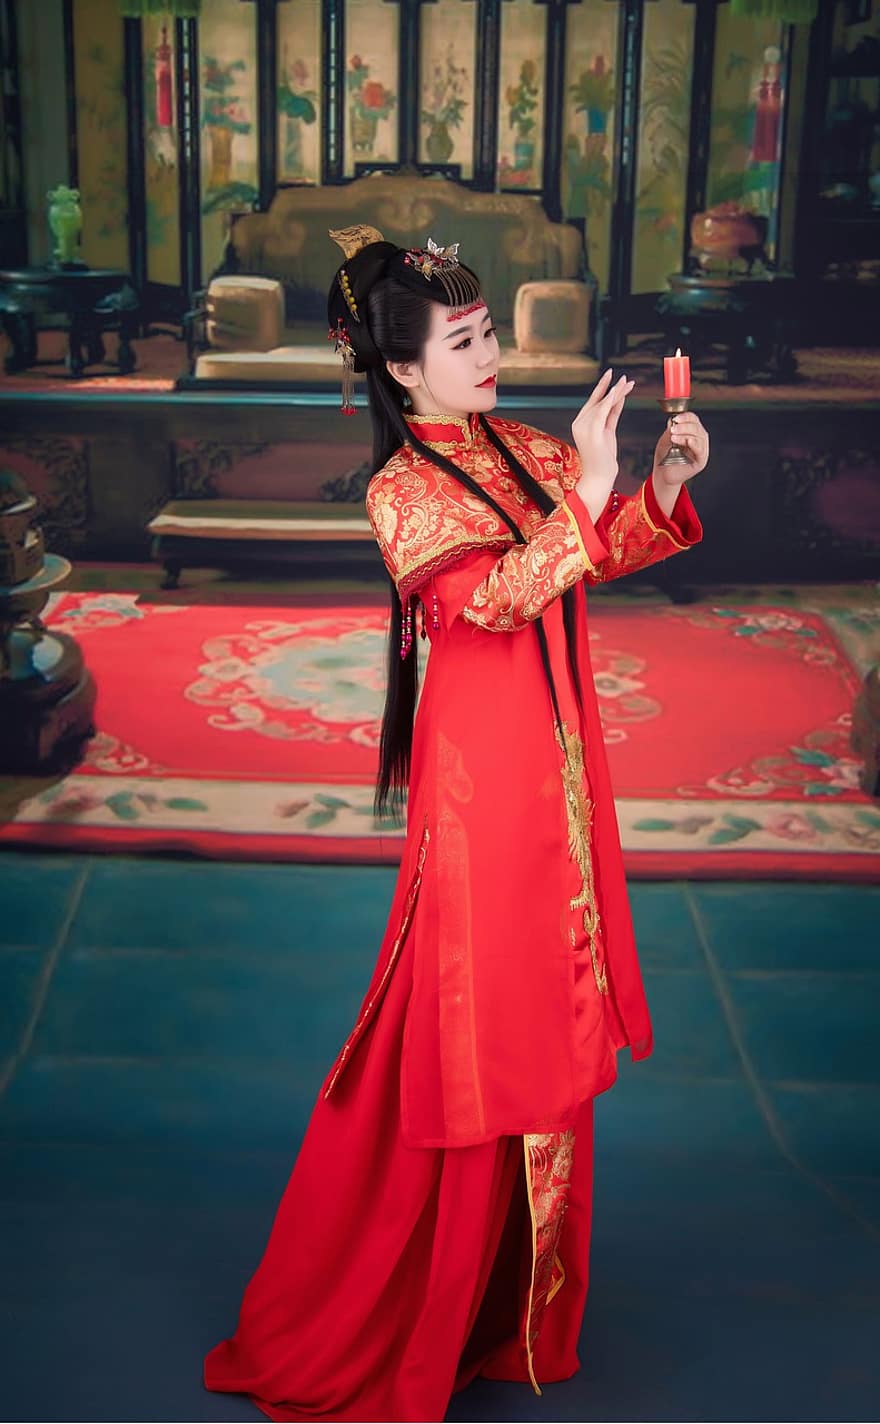 vrouw, schoonheid, model-, pose, portret, meisje, culturen, traditionele klederdracht, jurk, volwassen, Chinese cultuur